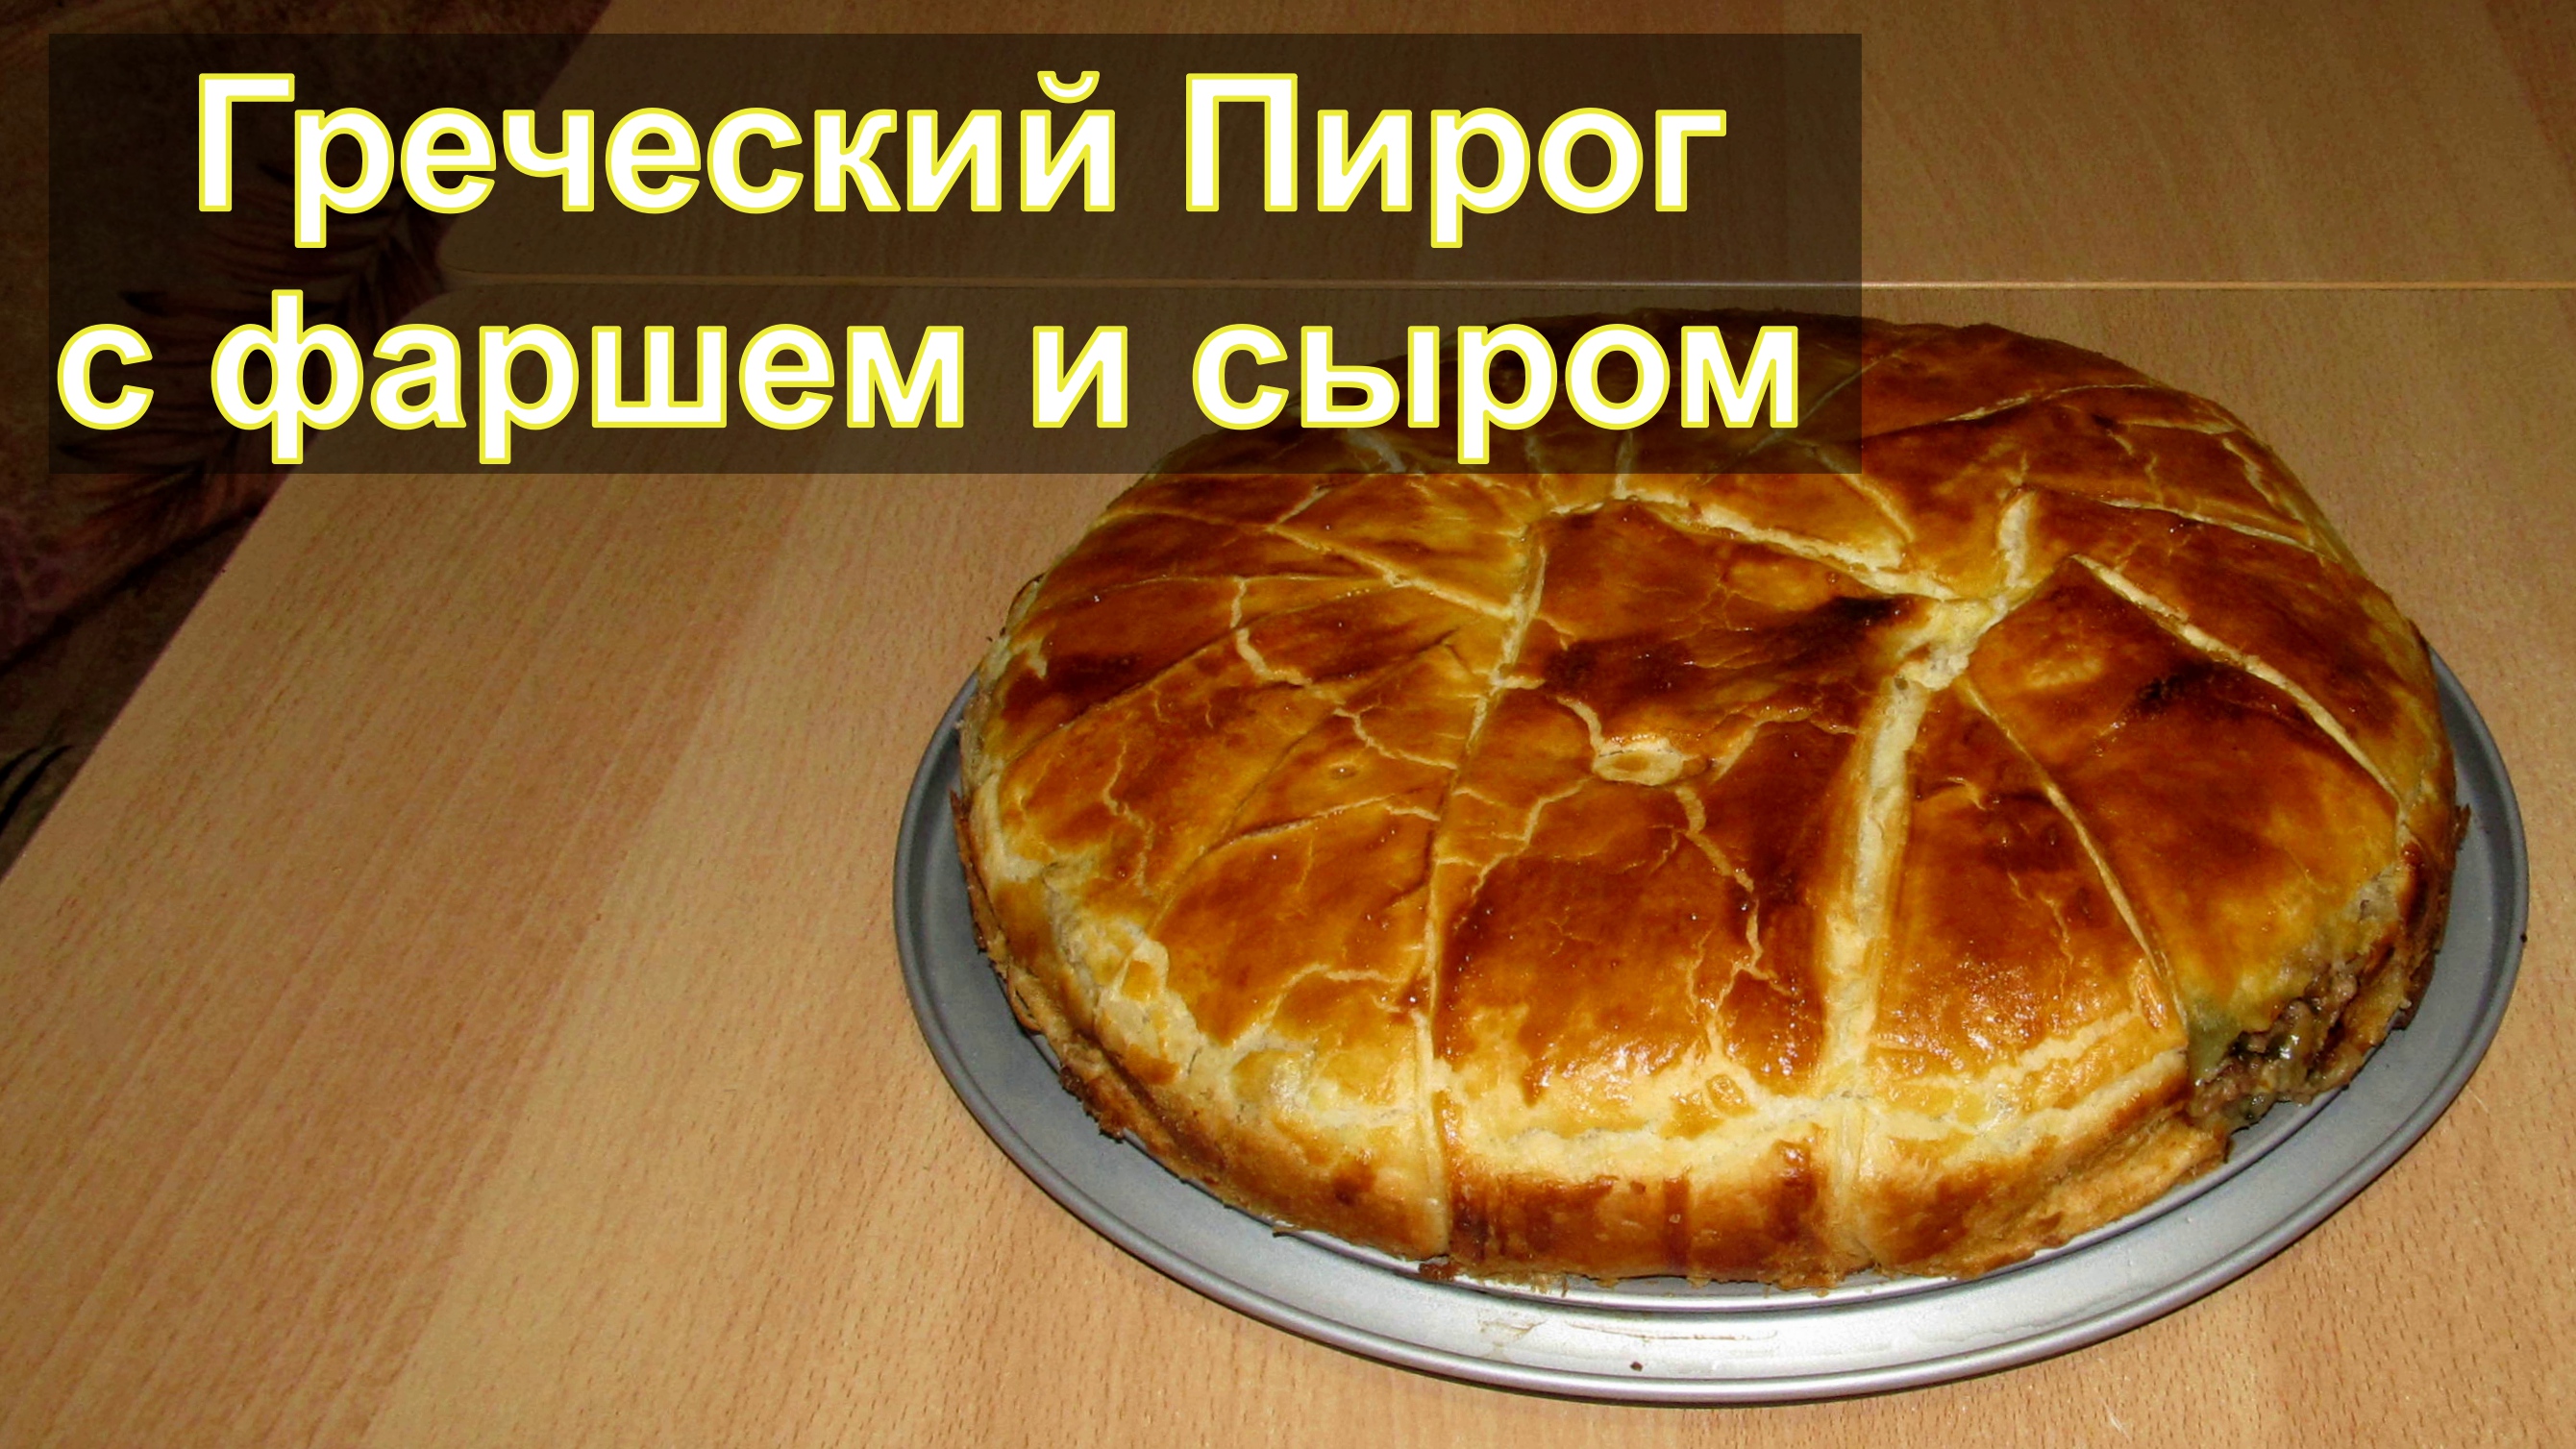 Греческий пирог с фаршем и сыром